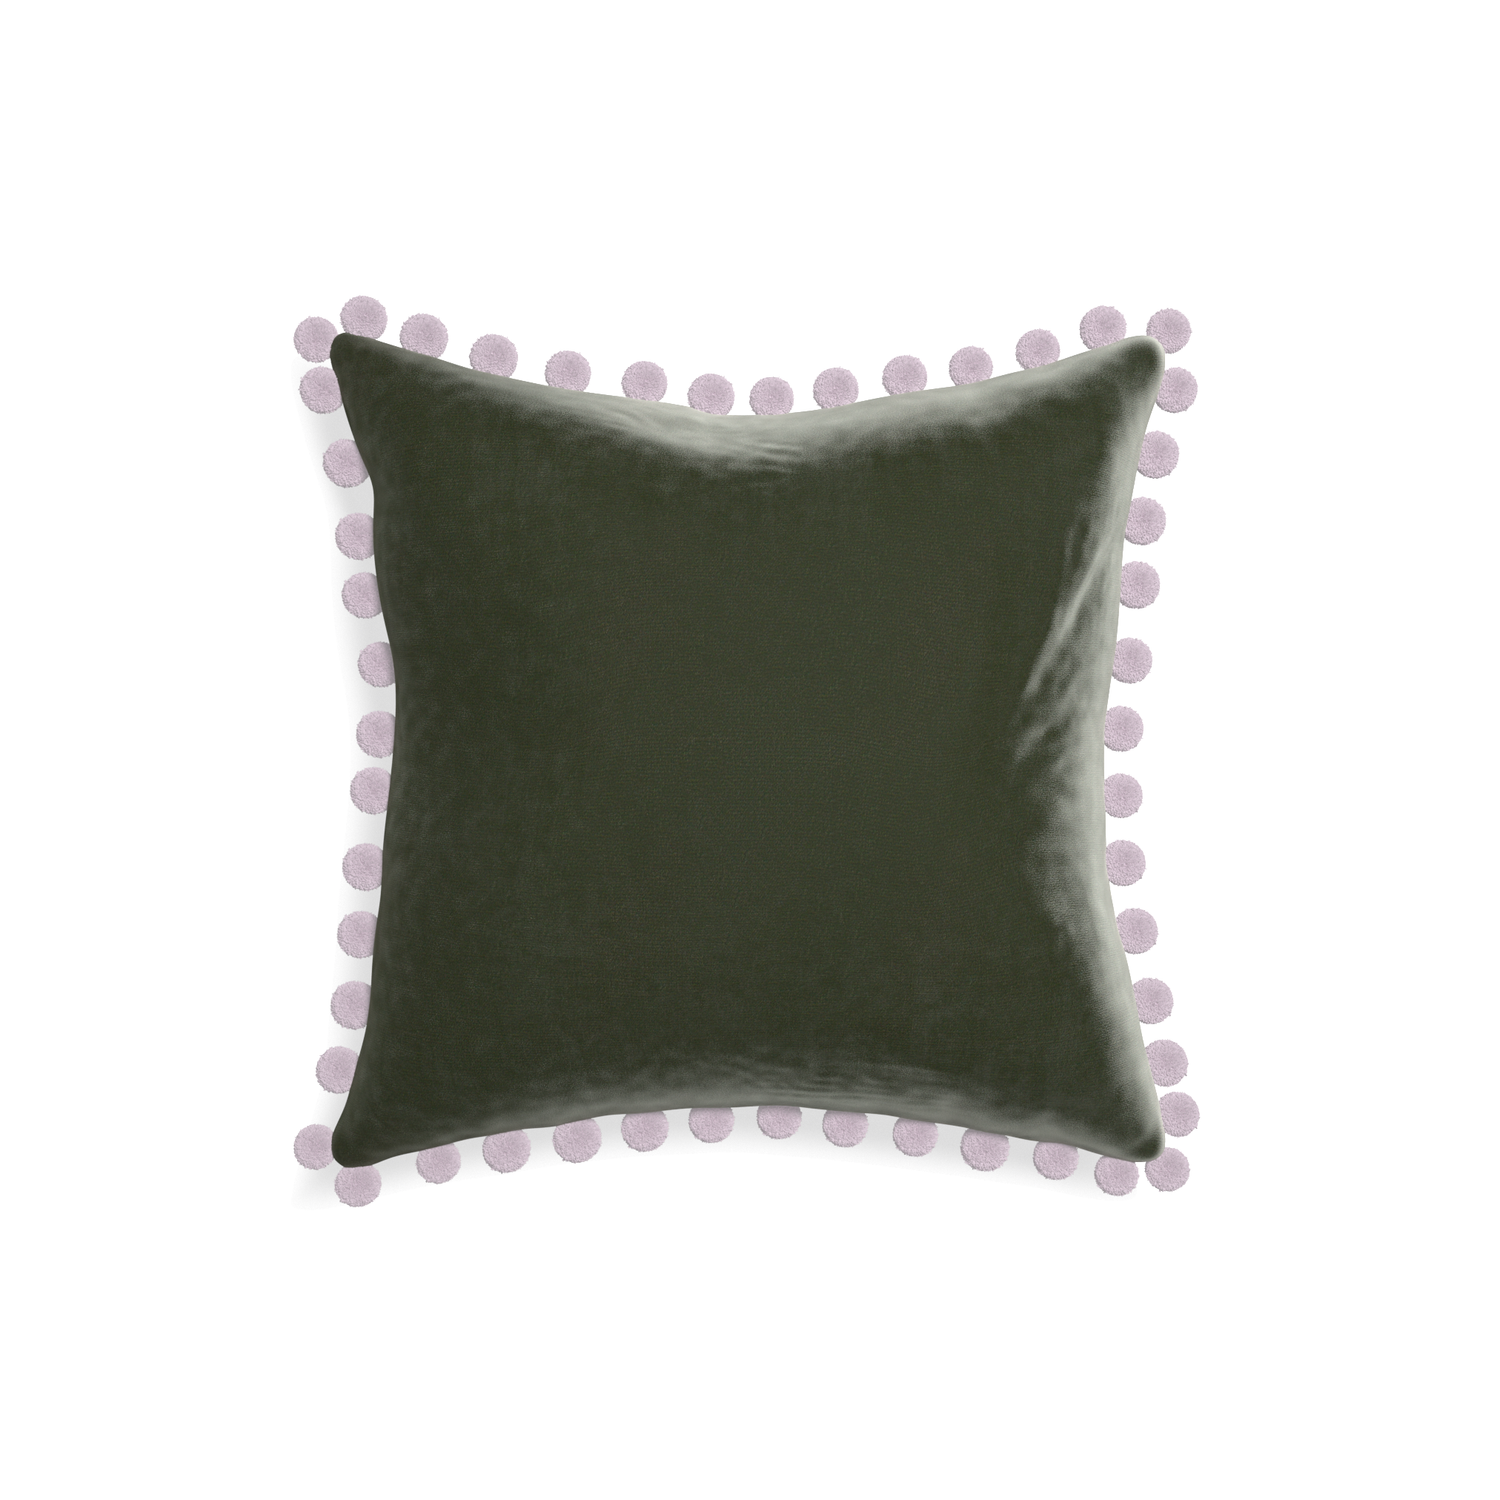 18-square fern velvet custom pillow with l on white background